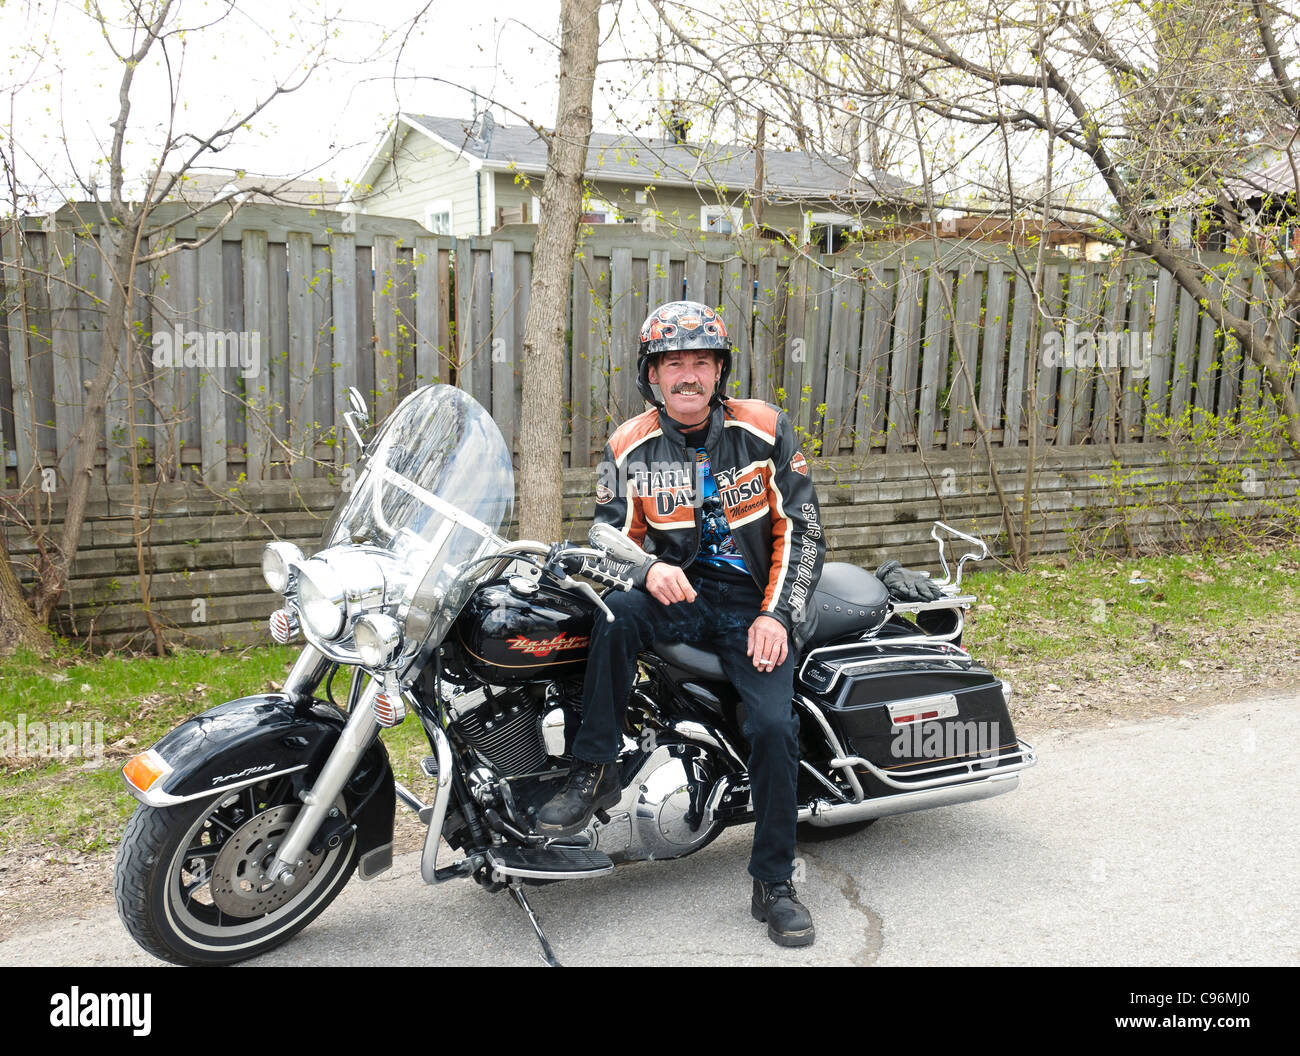 Biker montrant fièrement sa moto Harley Davidson sur son chemin à un rassemblement Banque D'Images